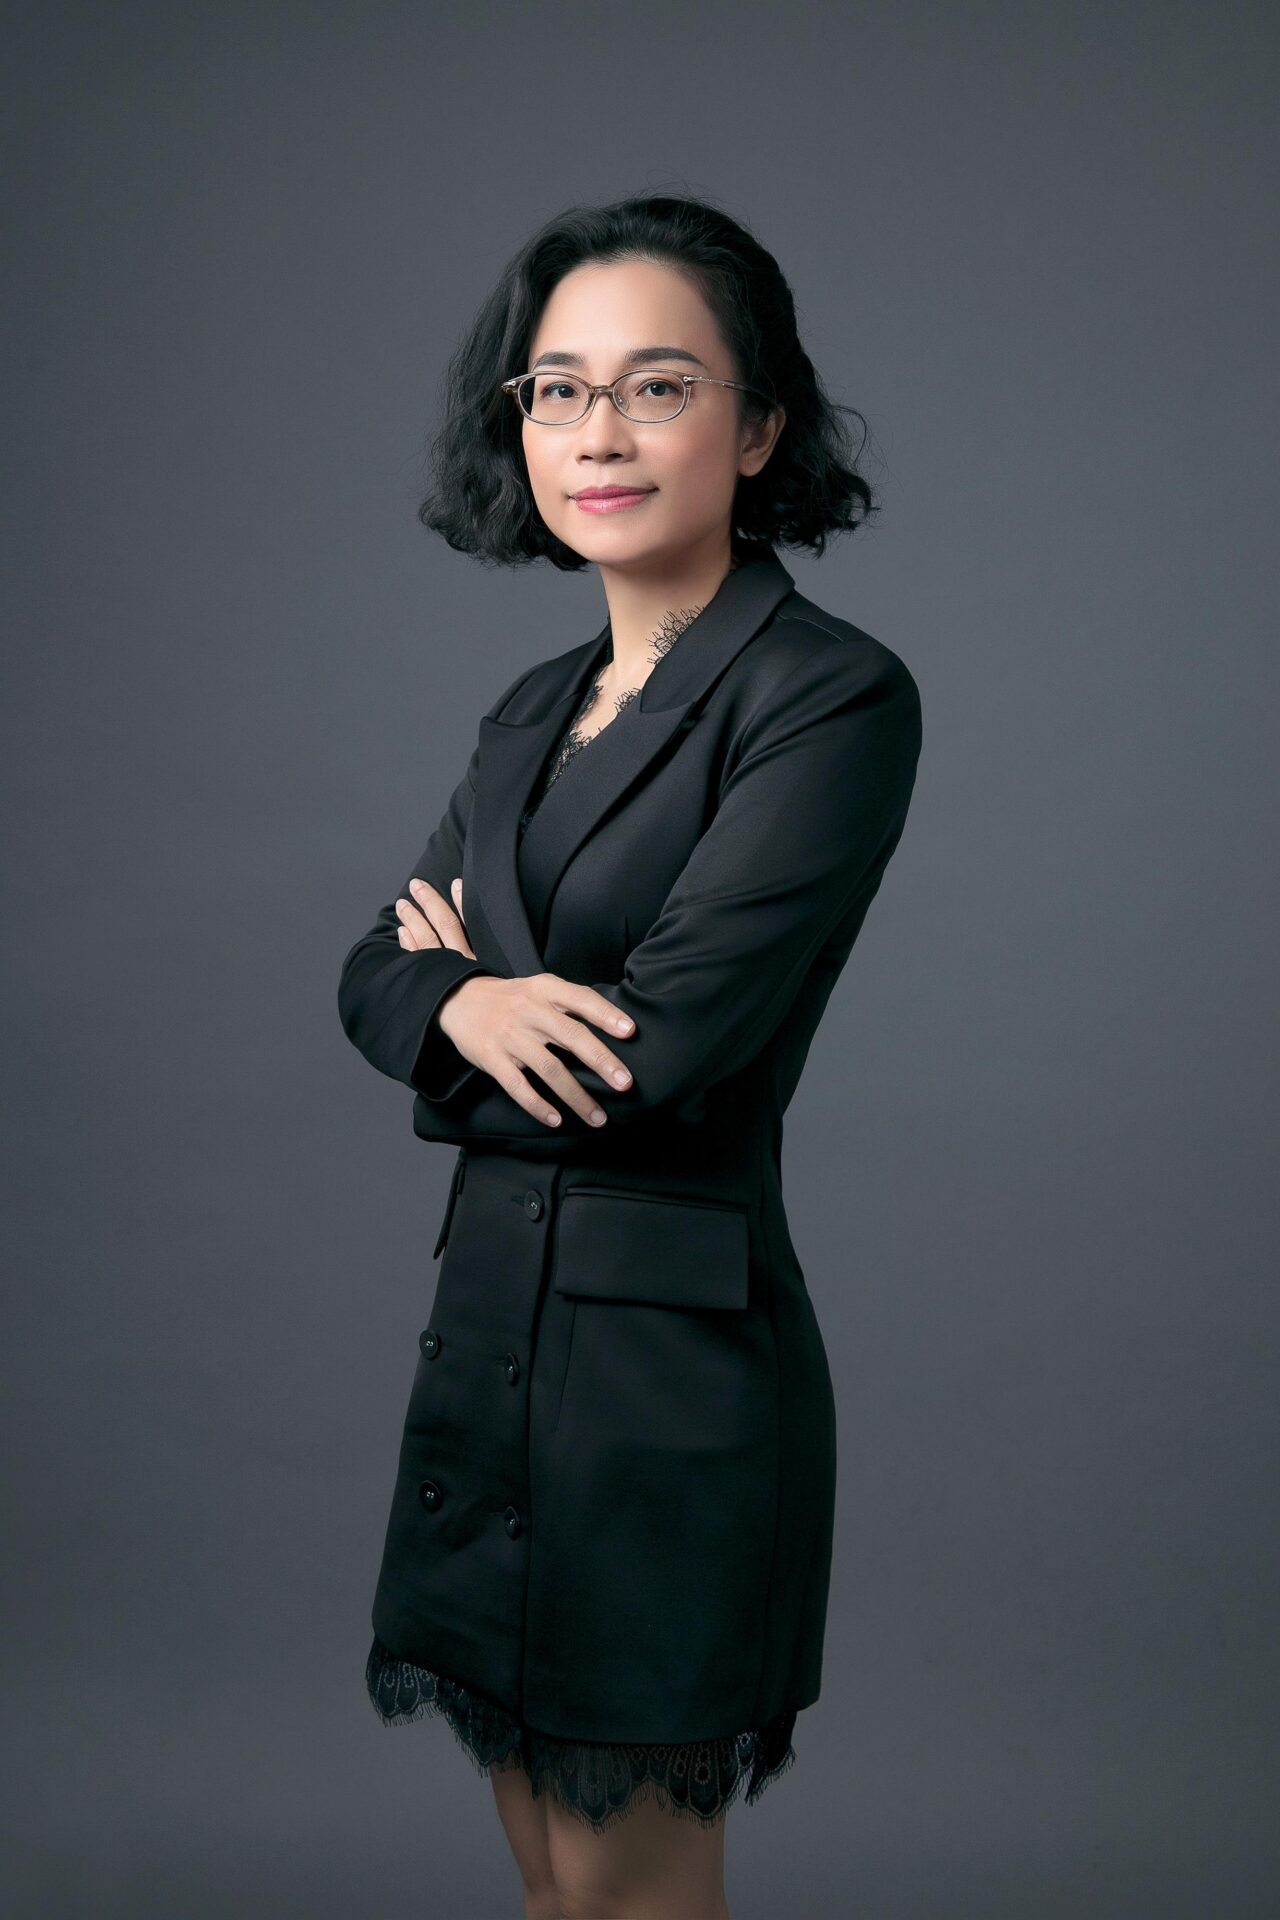 
Bà Nguyễn Ngô Vi Tâm
